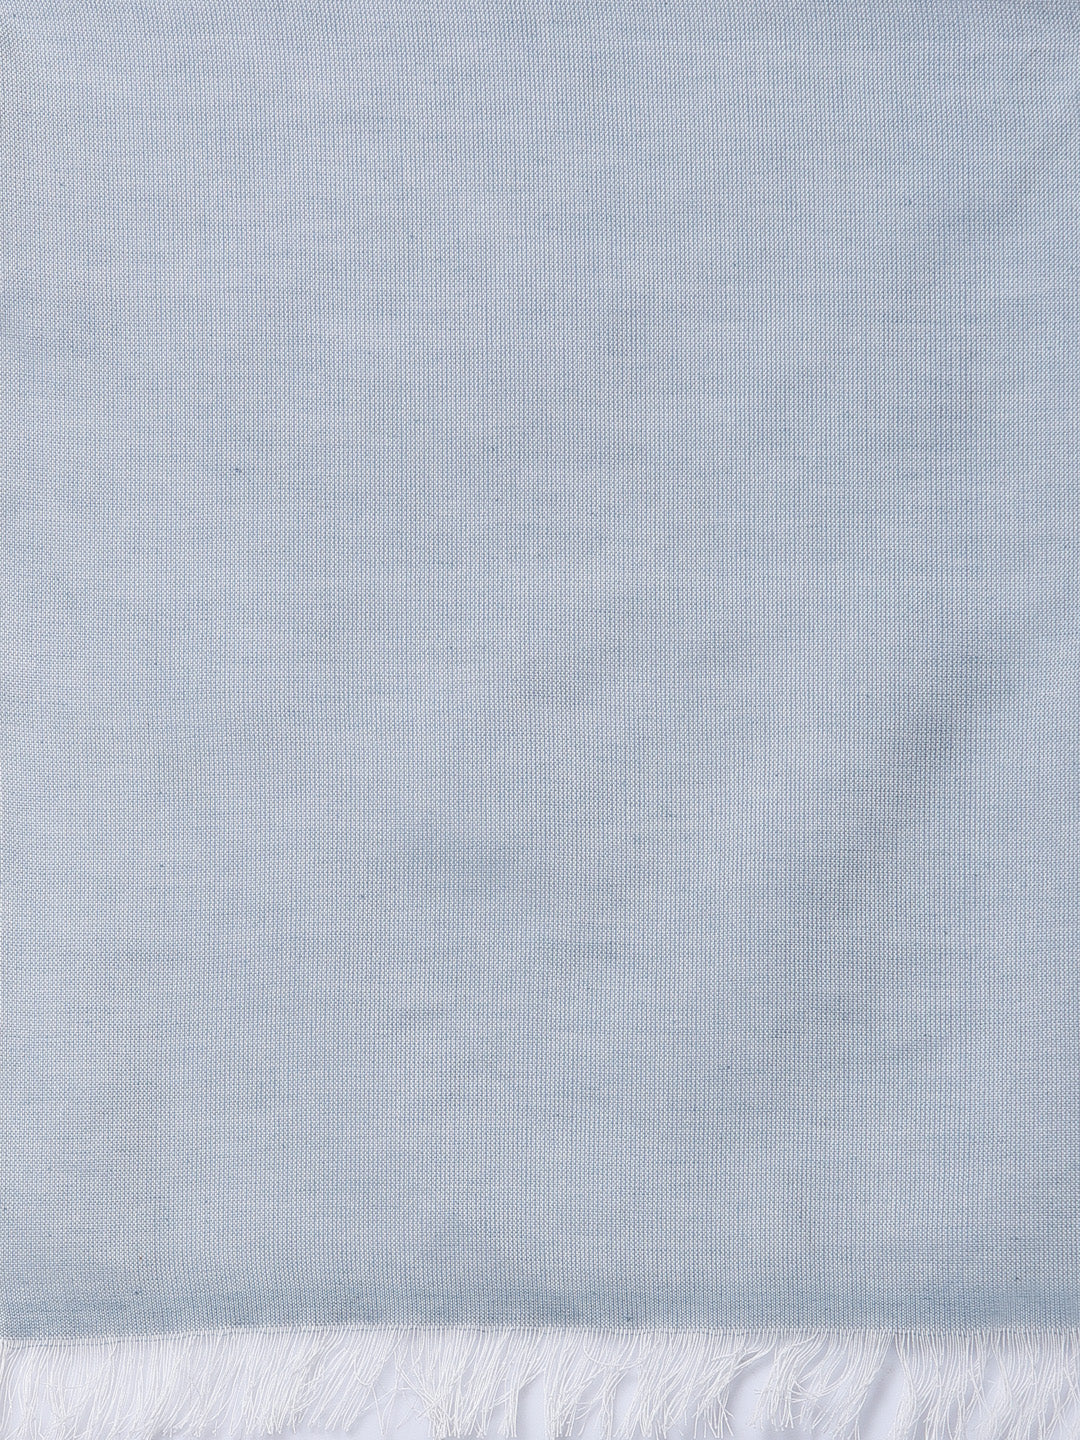 Arrabi Blue Solid Handwoven Cotton Full Size Stole (185 x 85 cm)